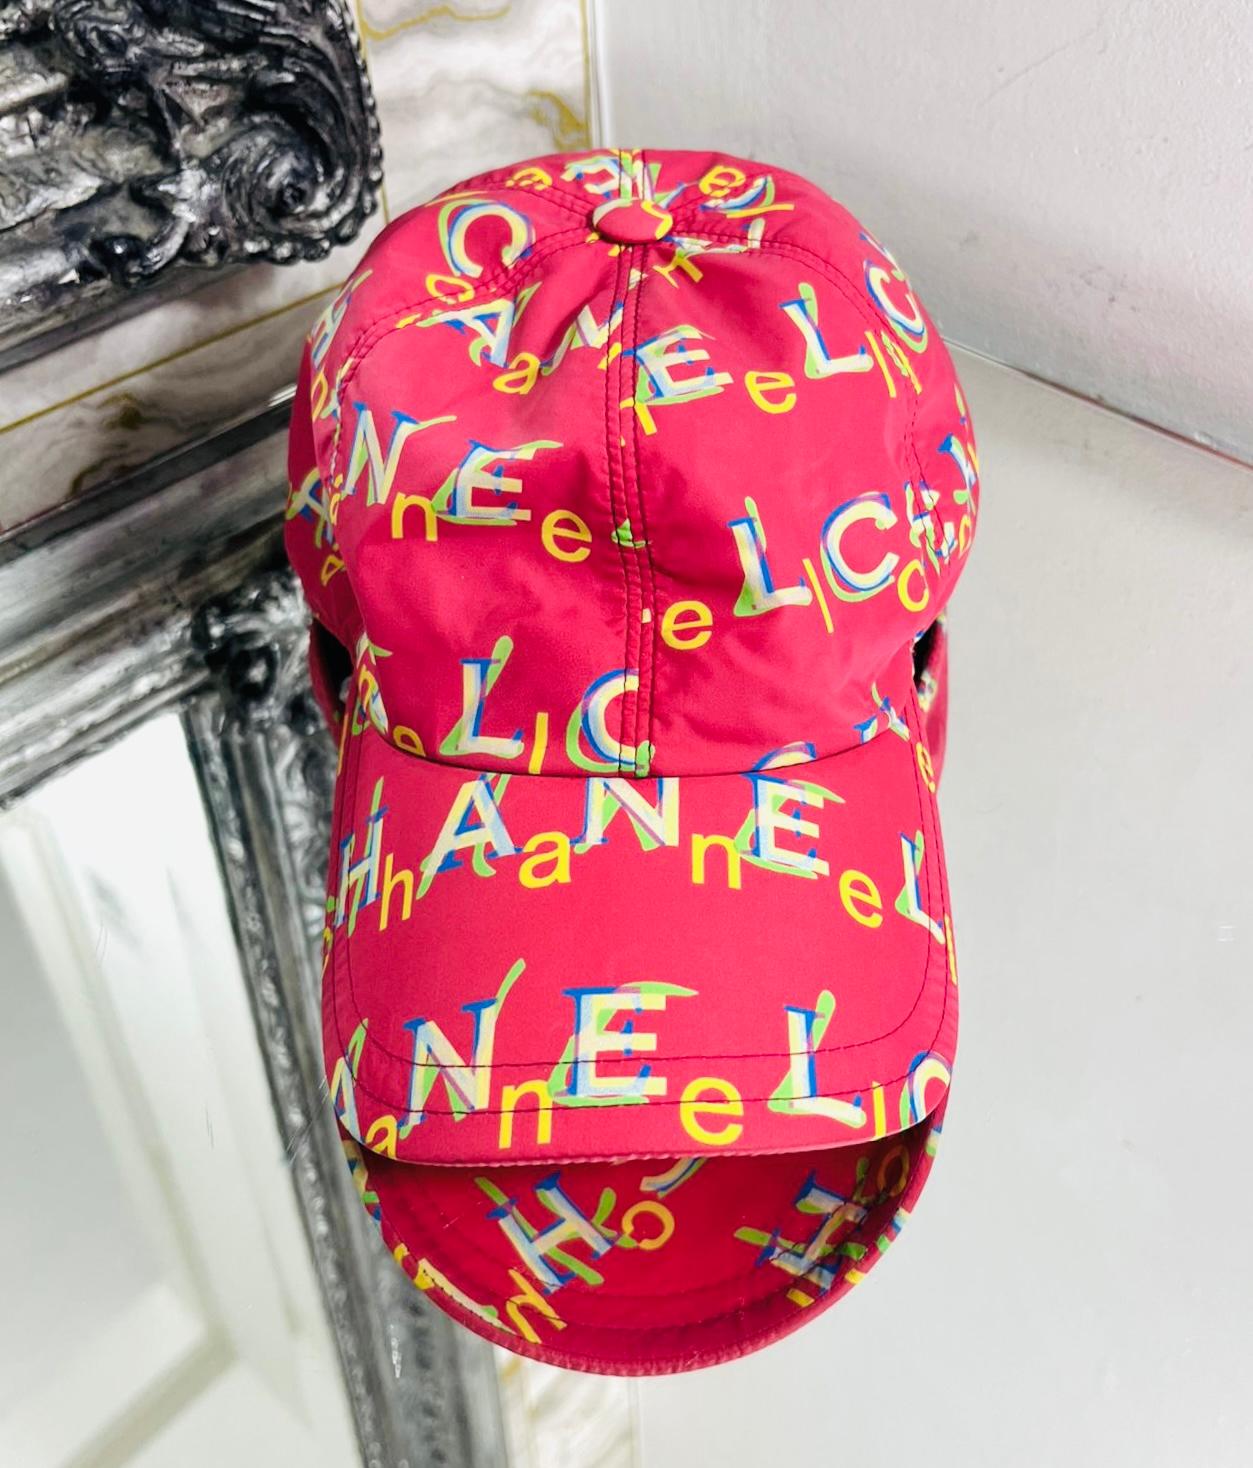 Casquette en nylon avec logo Chanel

Casquette fuchsia/rouge conçue avec des lettres multicolores superposées du logo 'Chanel'.

La visière est incurvée et le dos est ouvert et ajustable. Deux logos argentés 